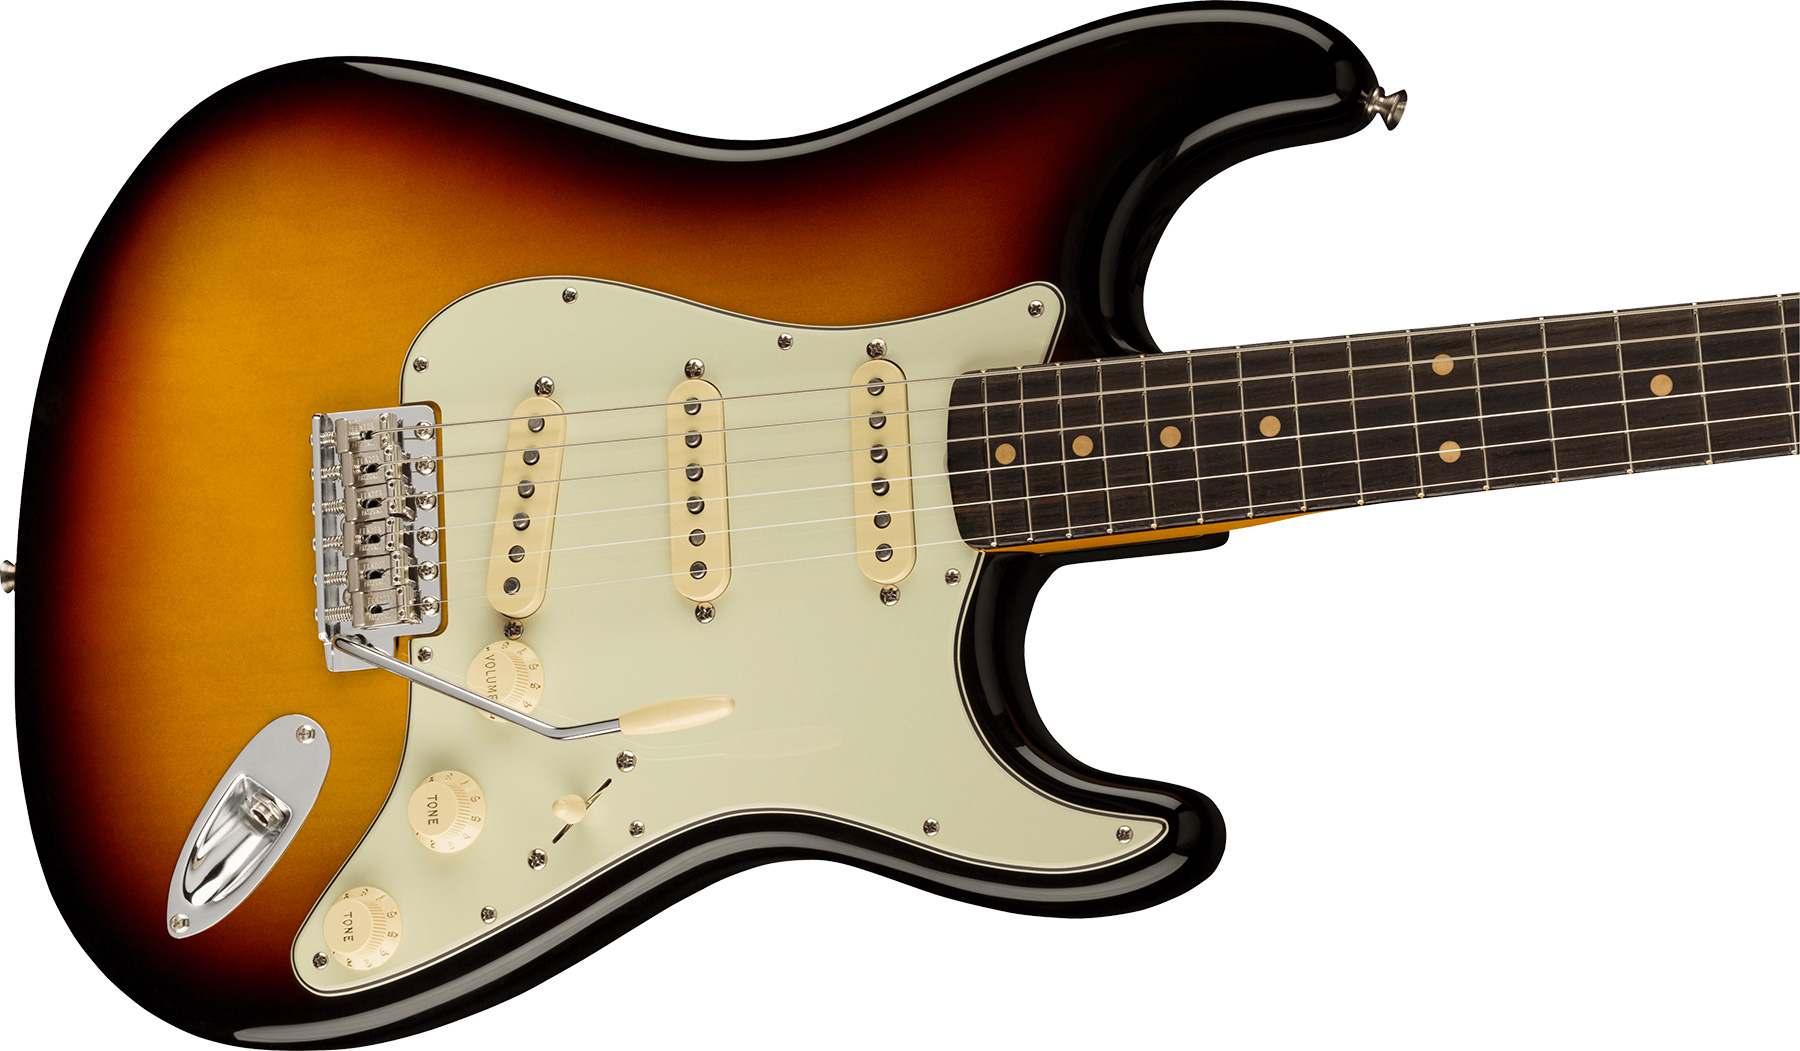 Fender Strat 1961 American Vintage Ii Usa 3s Trem Rw - 3-color Sunburst - Elektrische gitaar in Str-vorm - Variation 2